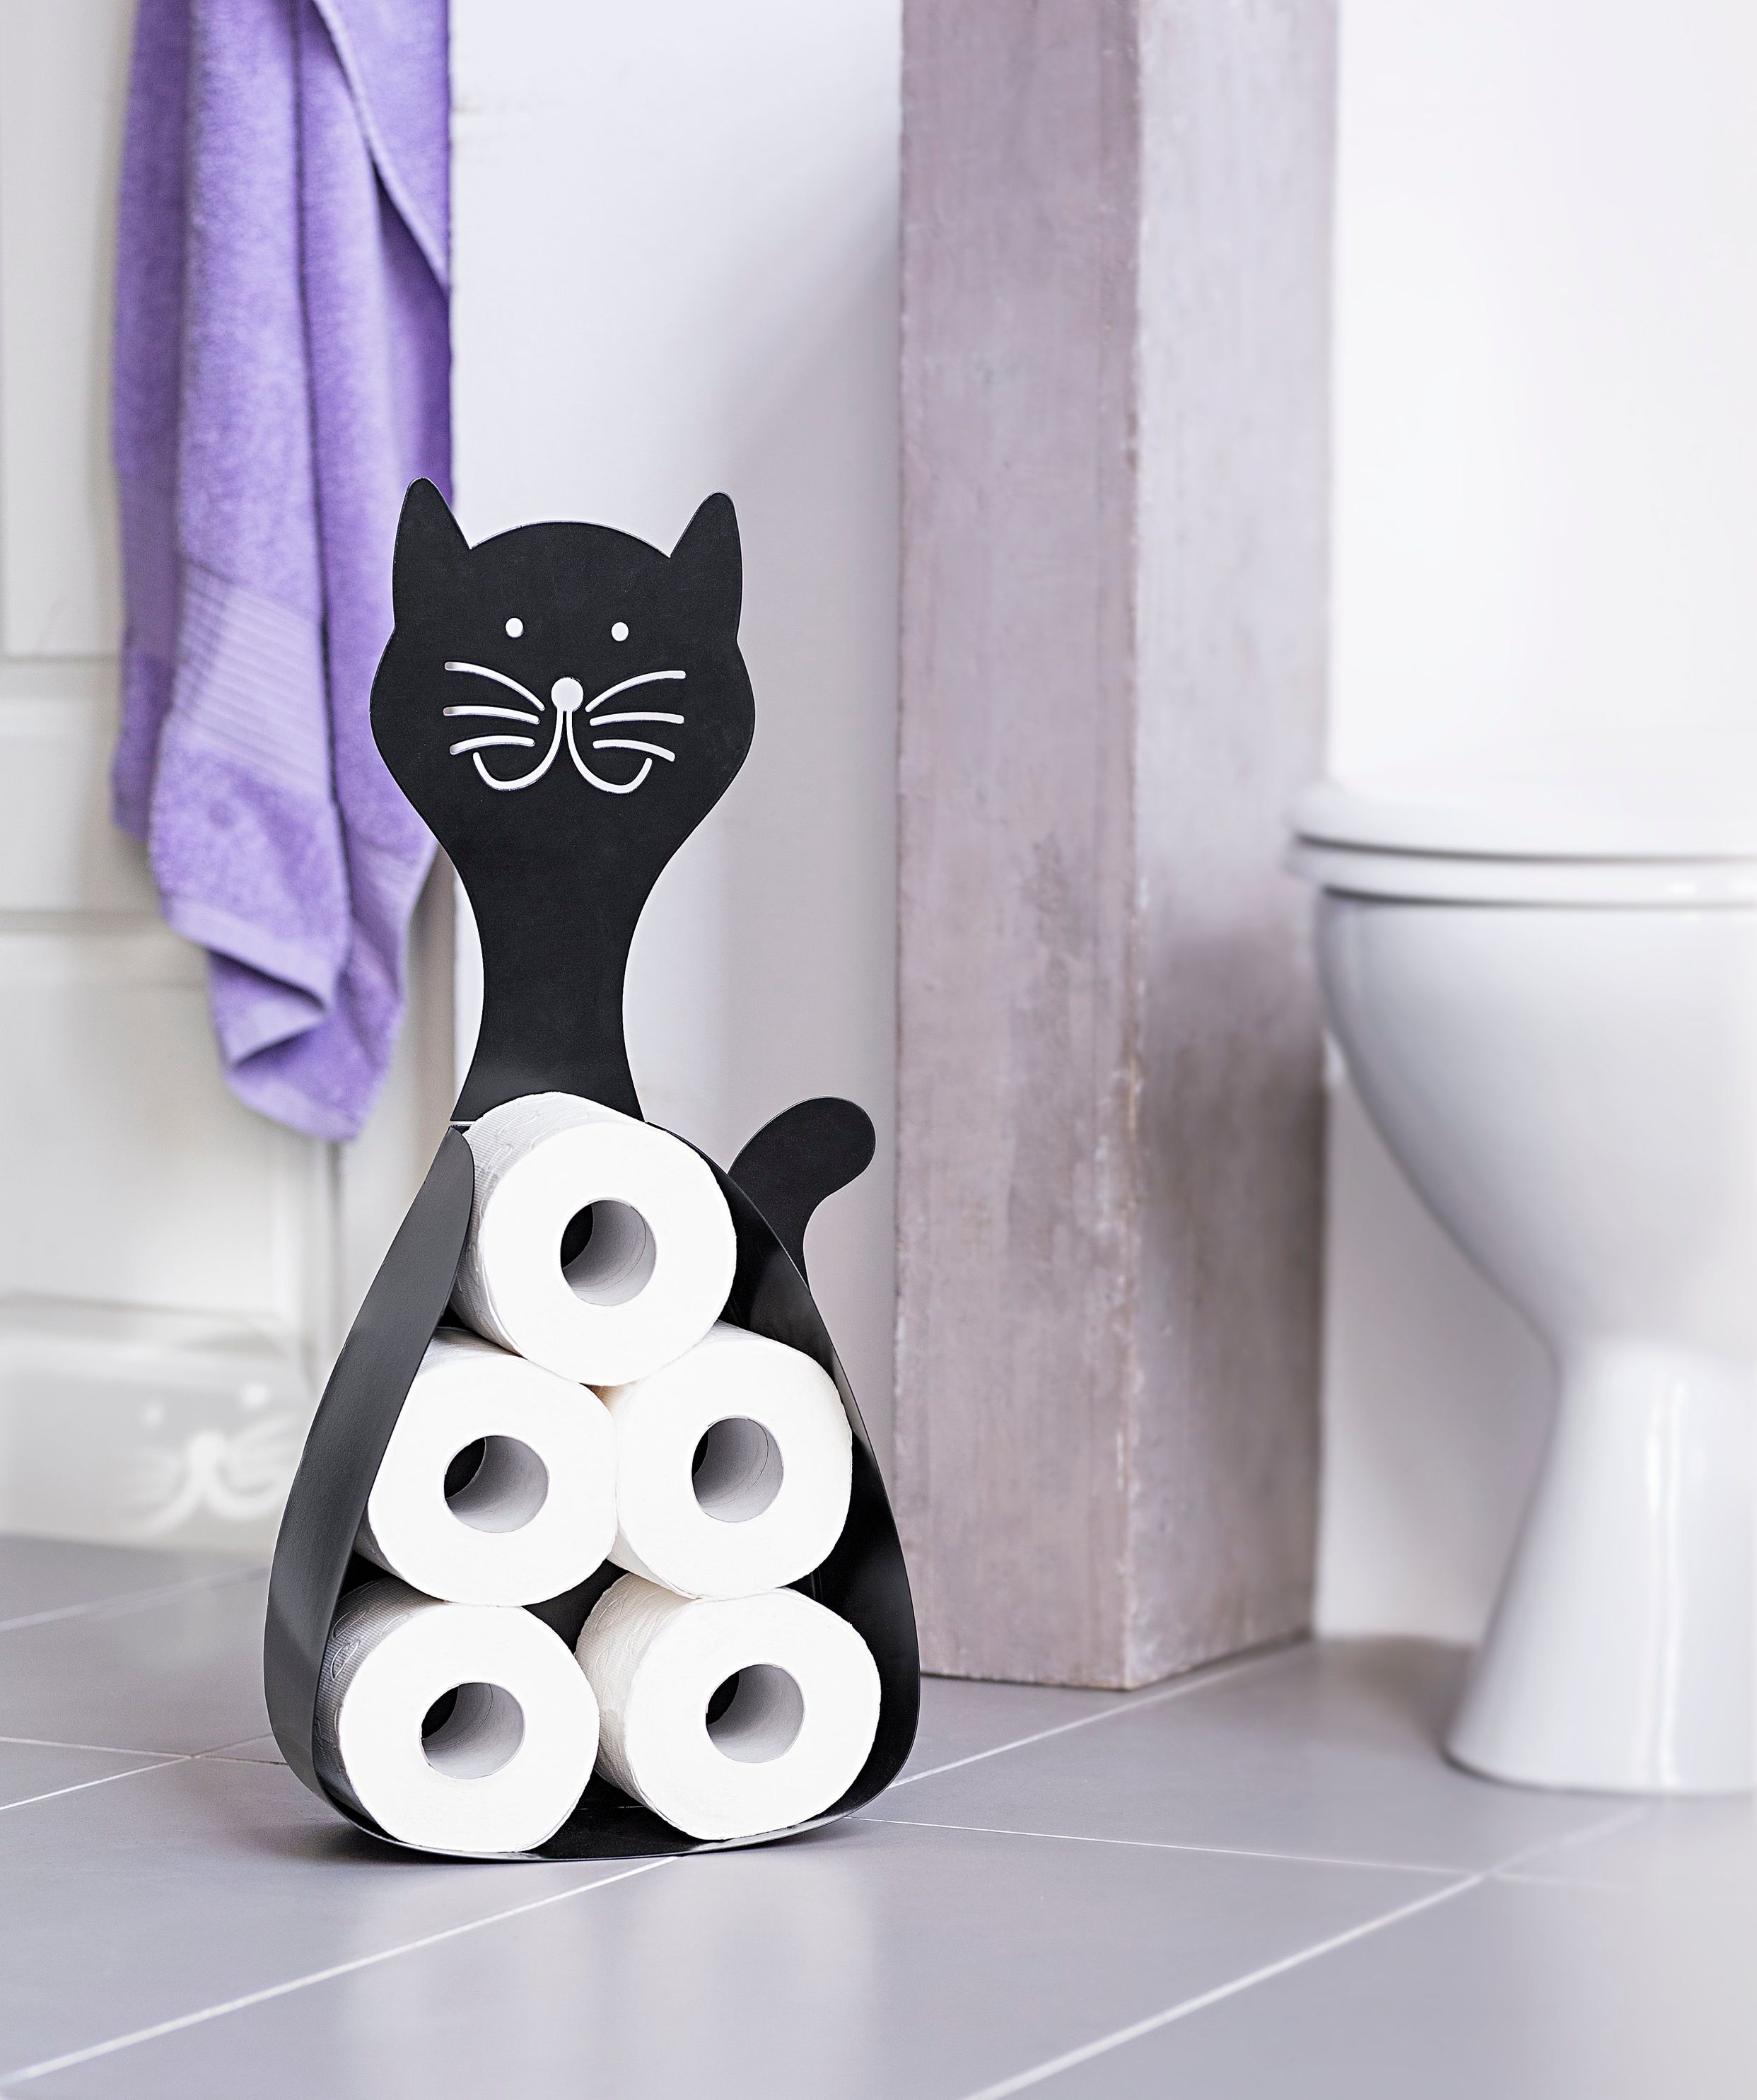 WC-Rollenhalter Katze online kaufen - Orbisana